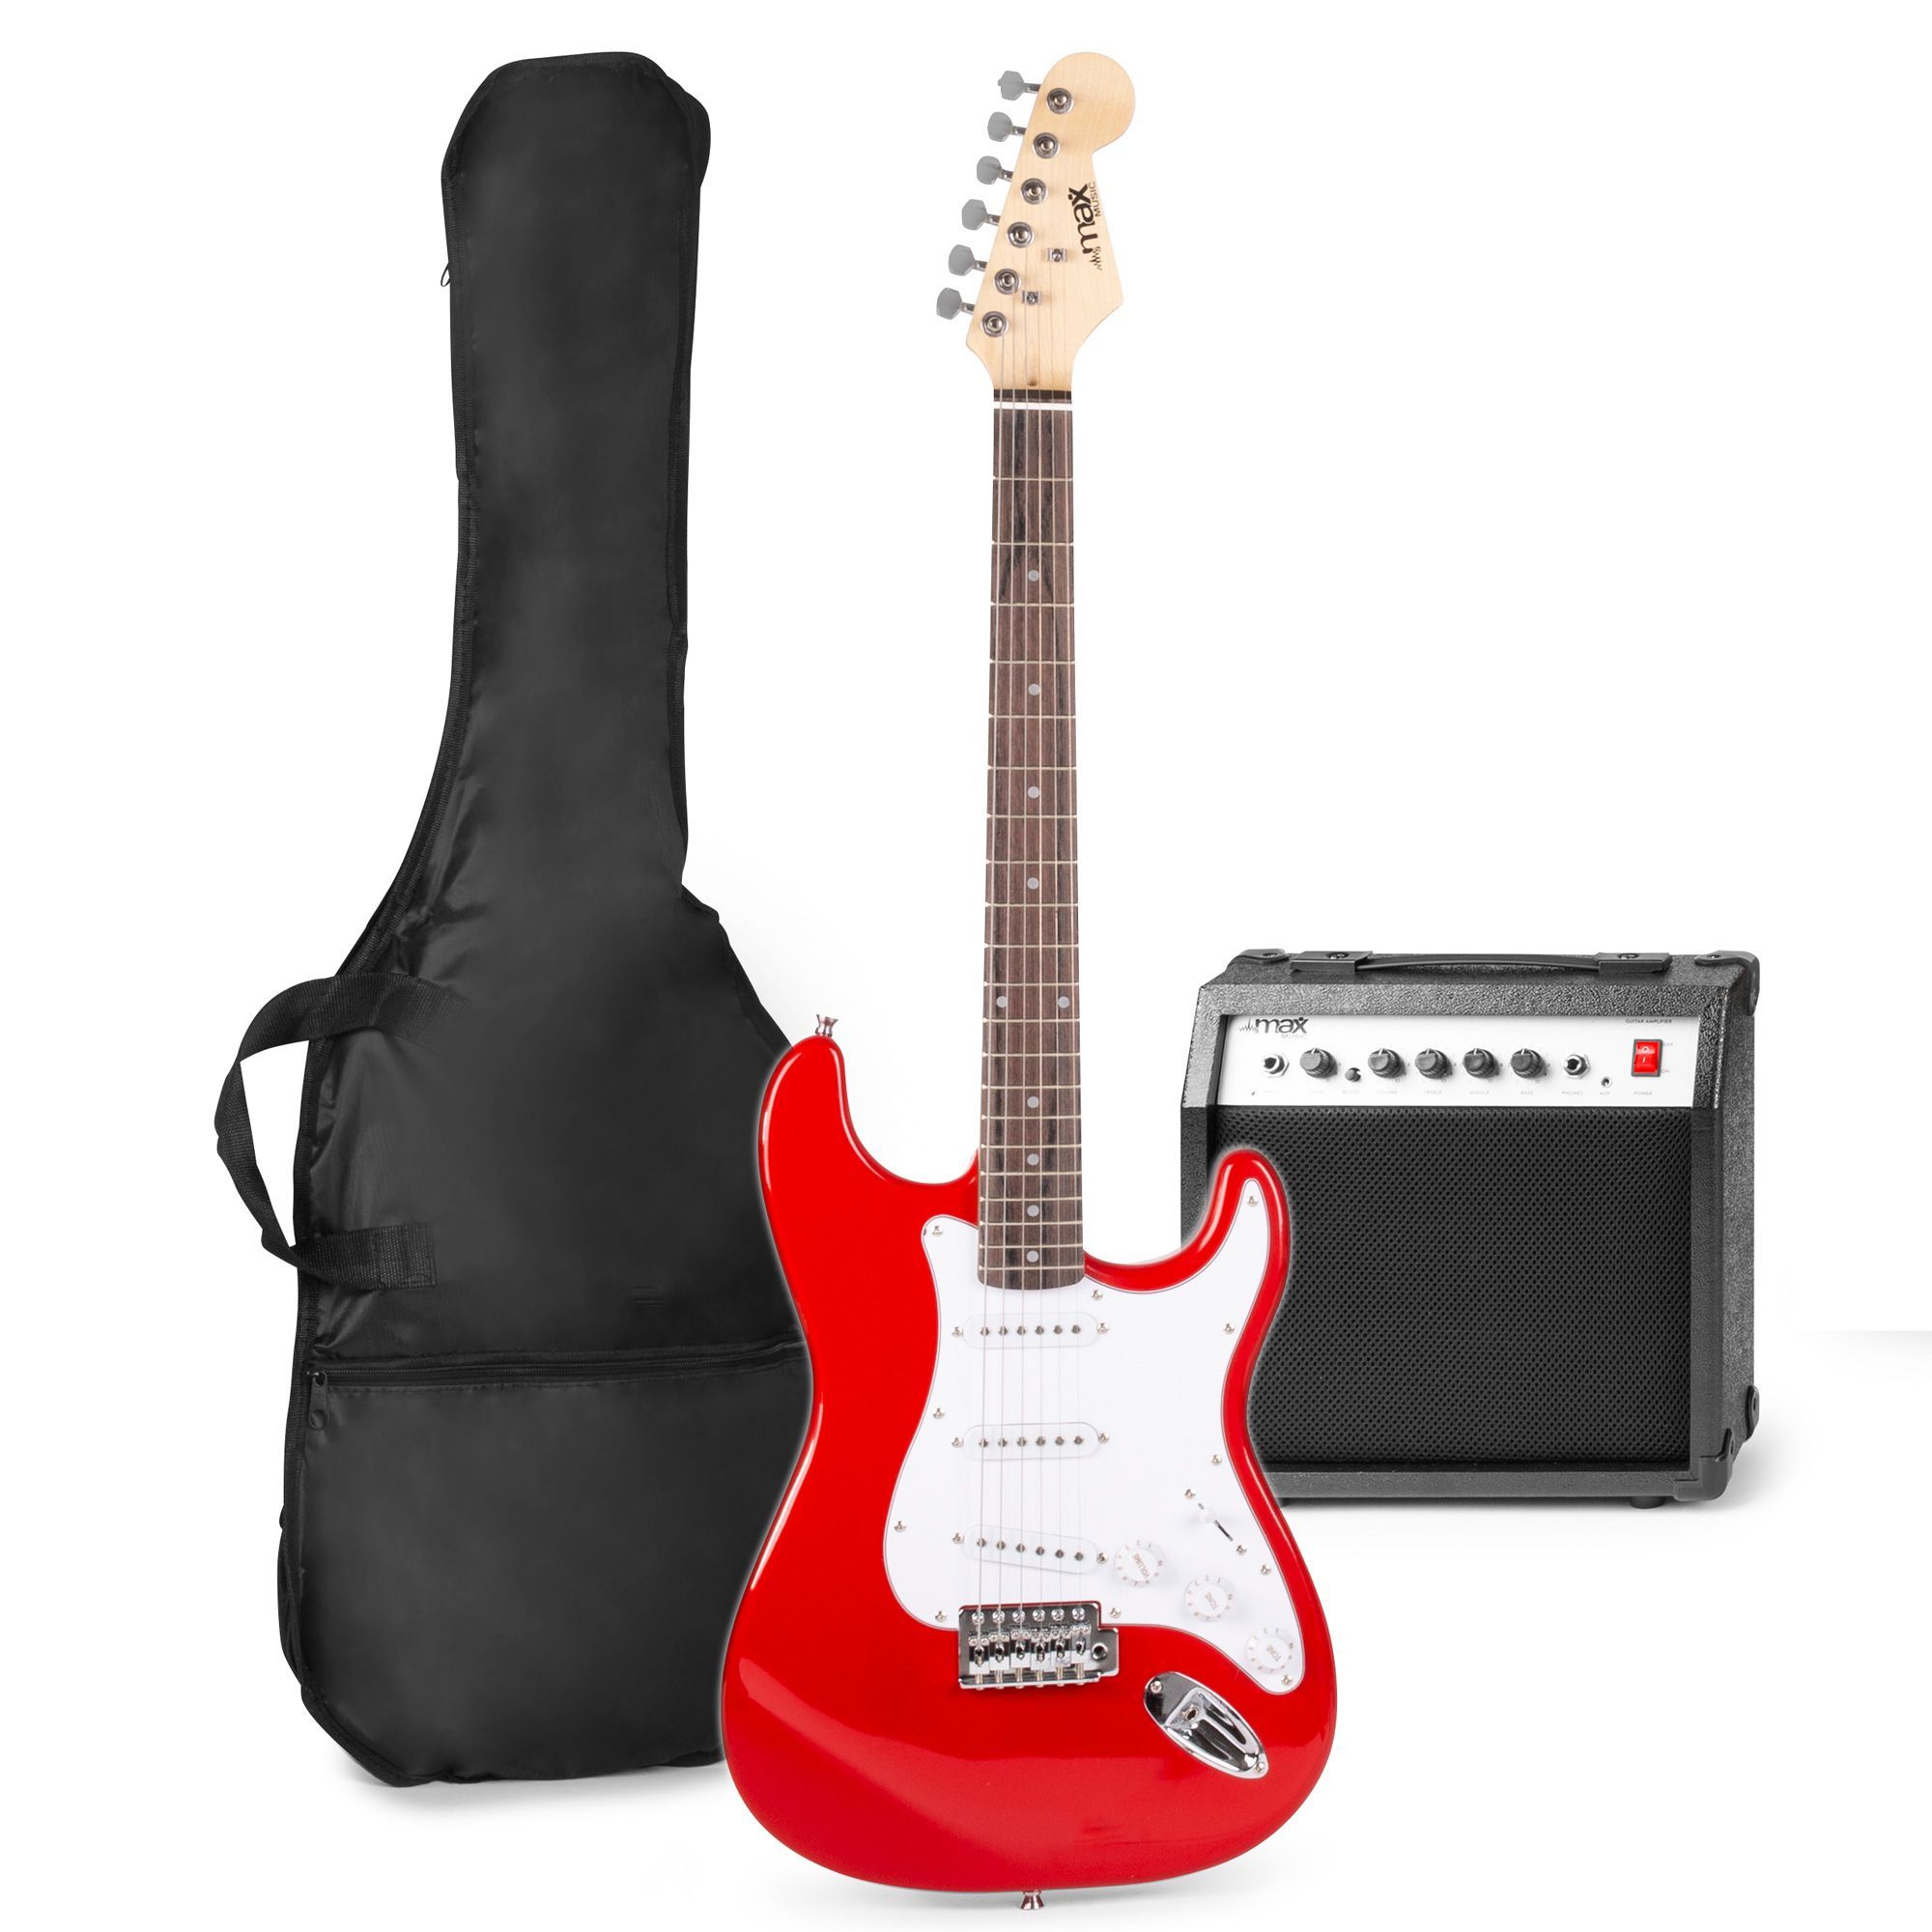 Wees aardbeving Extreem MAX GigKit elektrische gitaar starterset met o.a. 40W versterker - Rood  kopen?